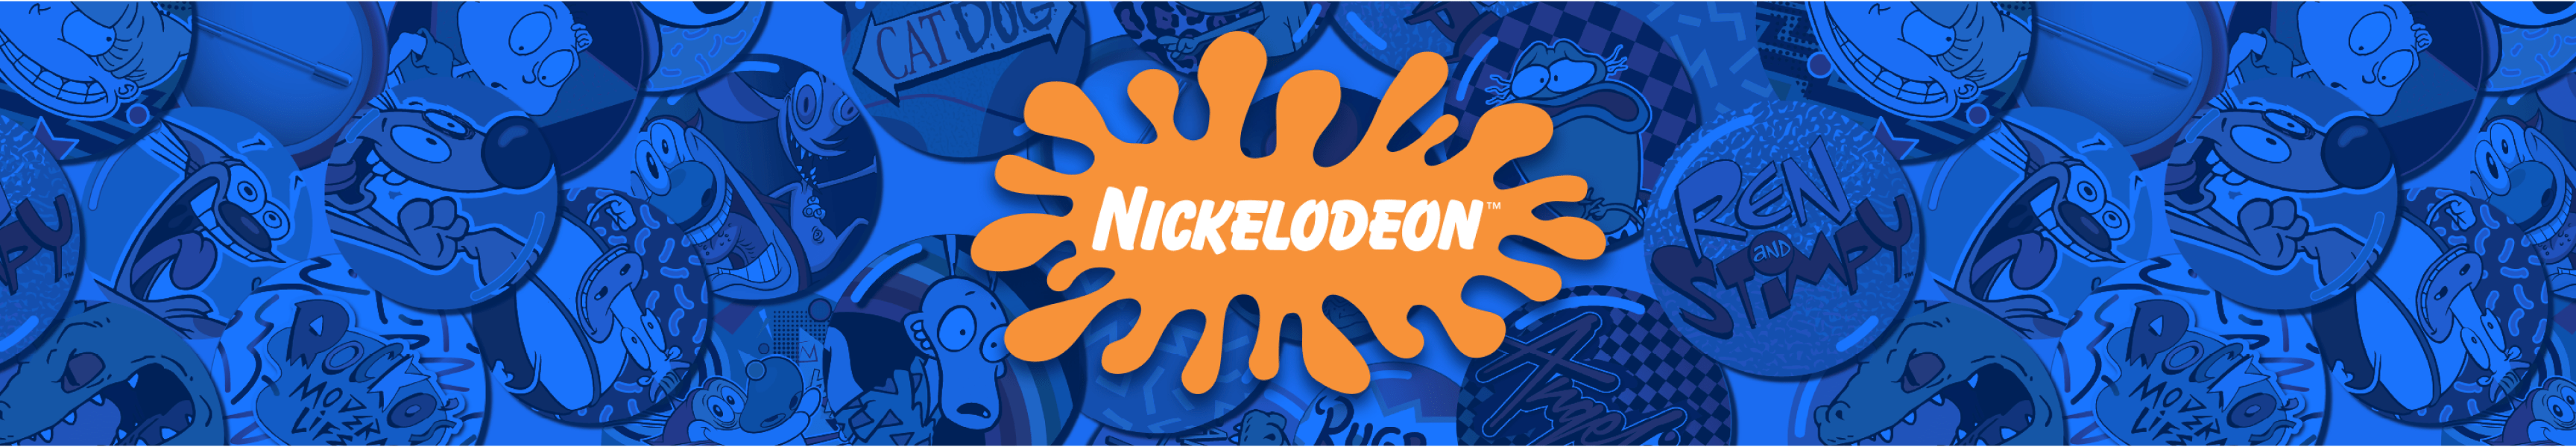 Nickelodeon rétro